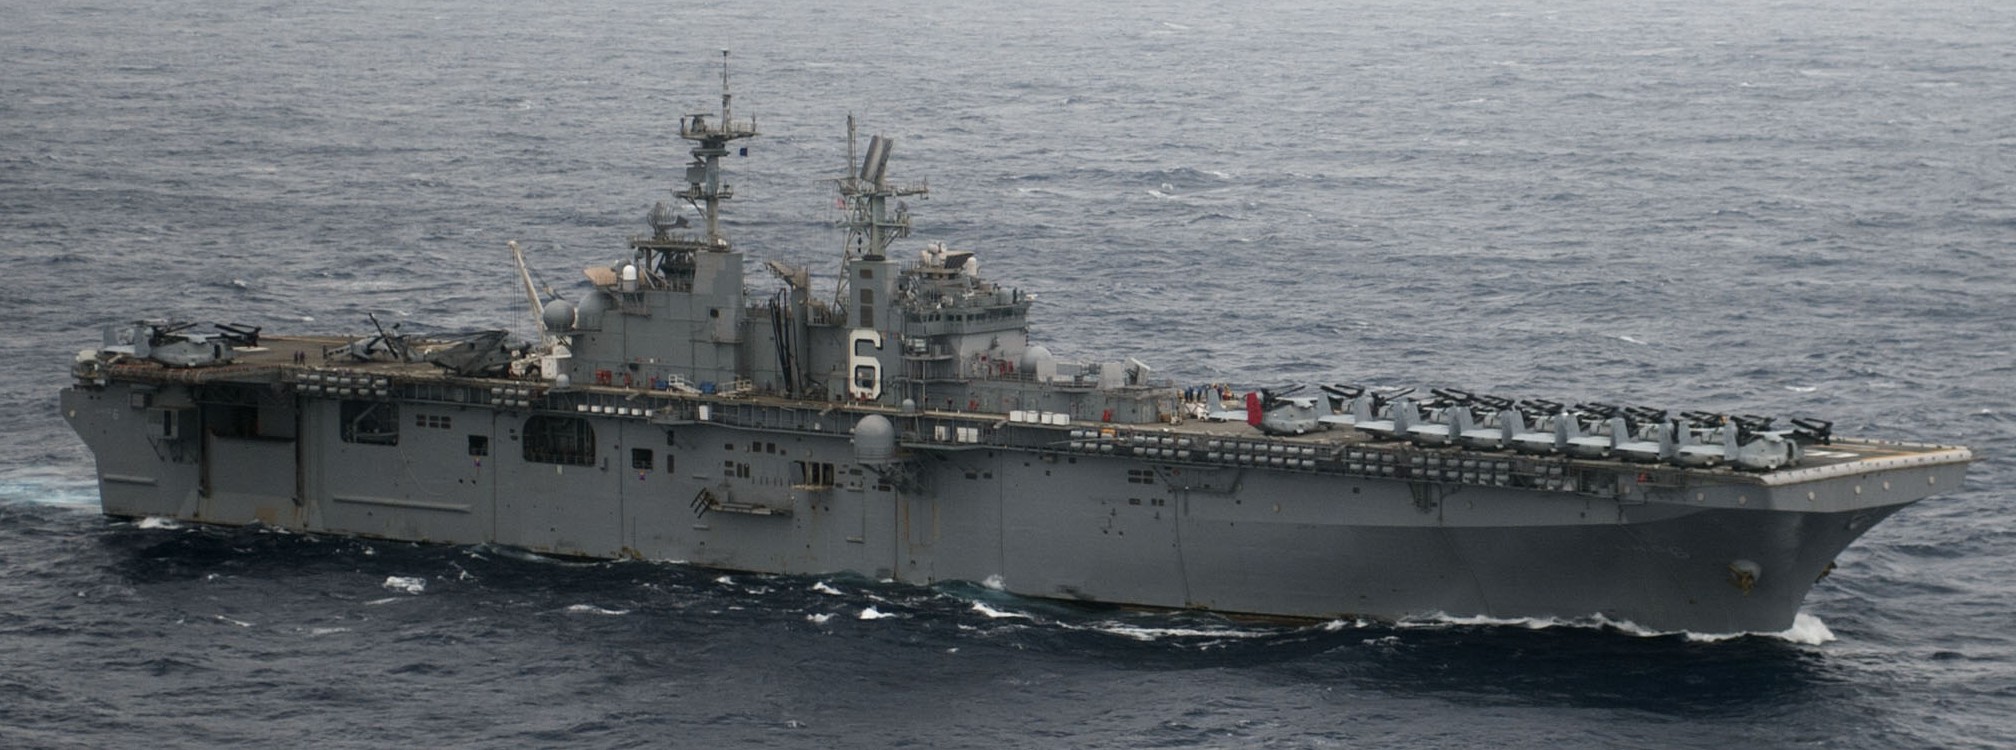 lhd-6 uss bonhomme richard amphibious assault ship landing helicopter dock wasp class 169